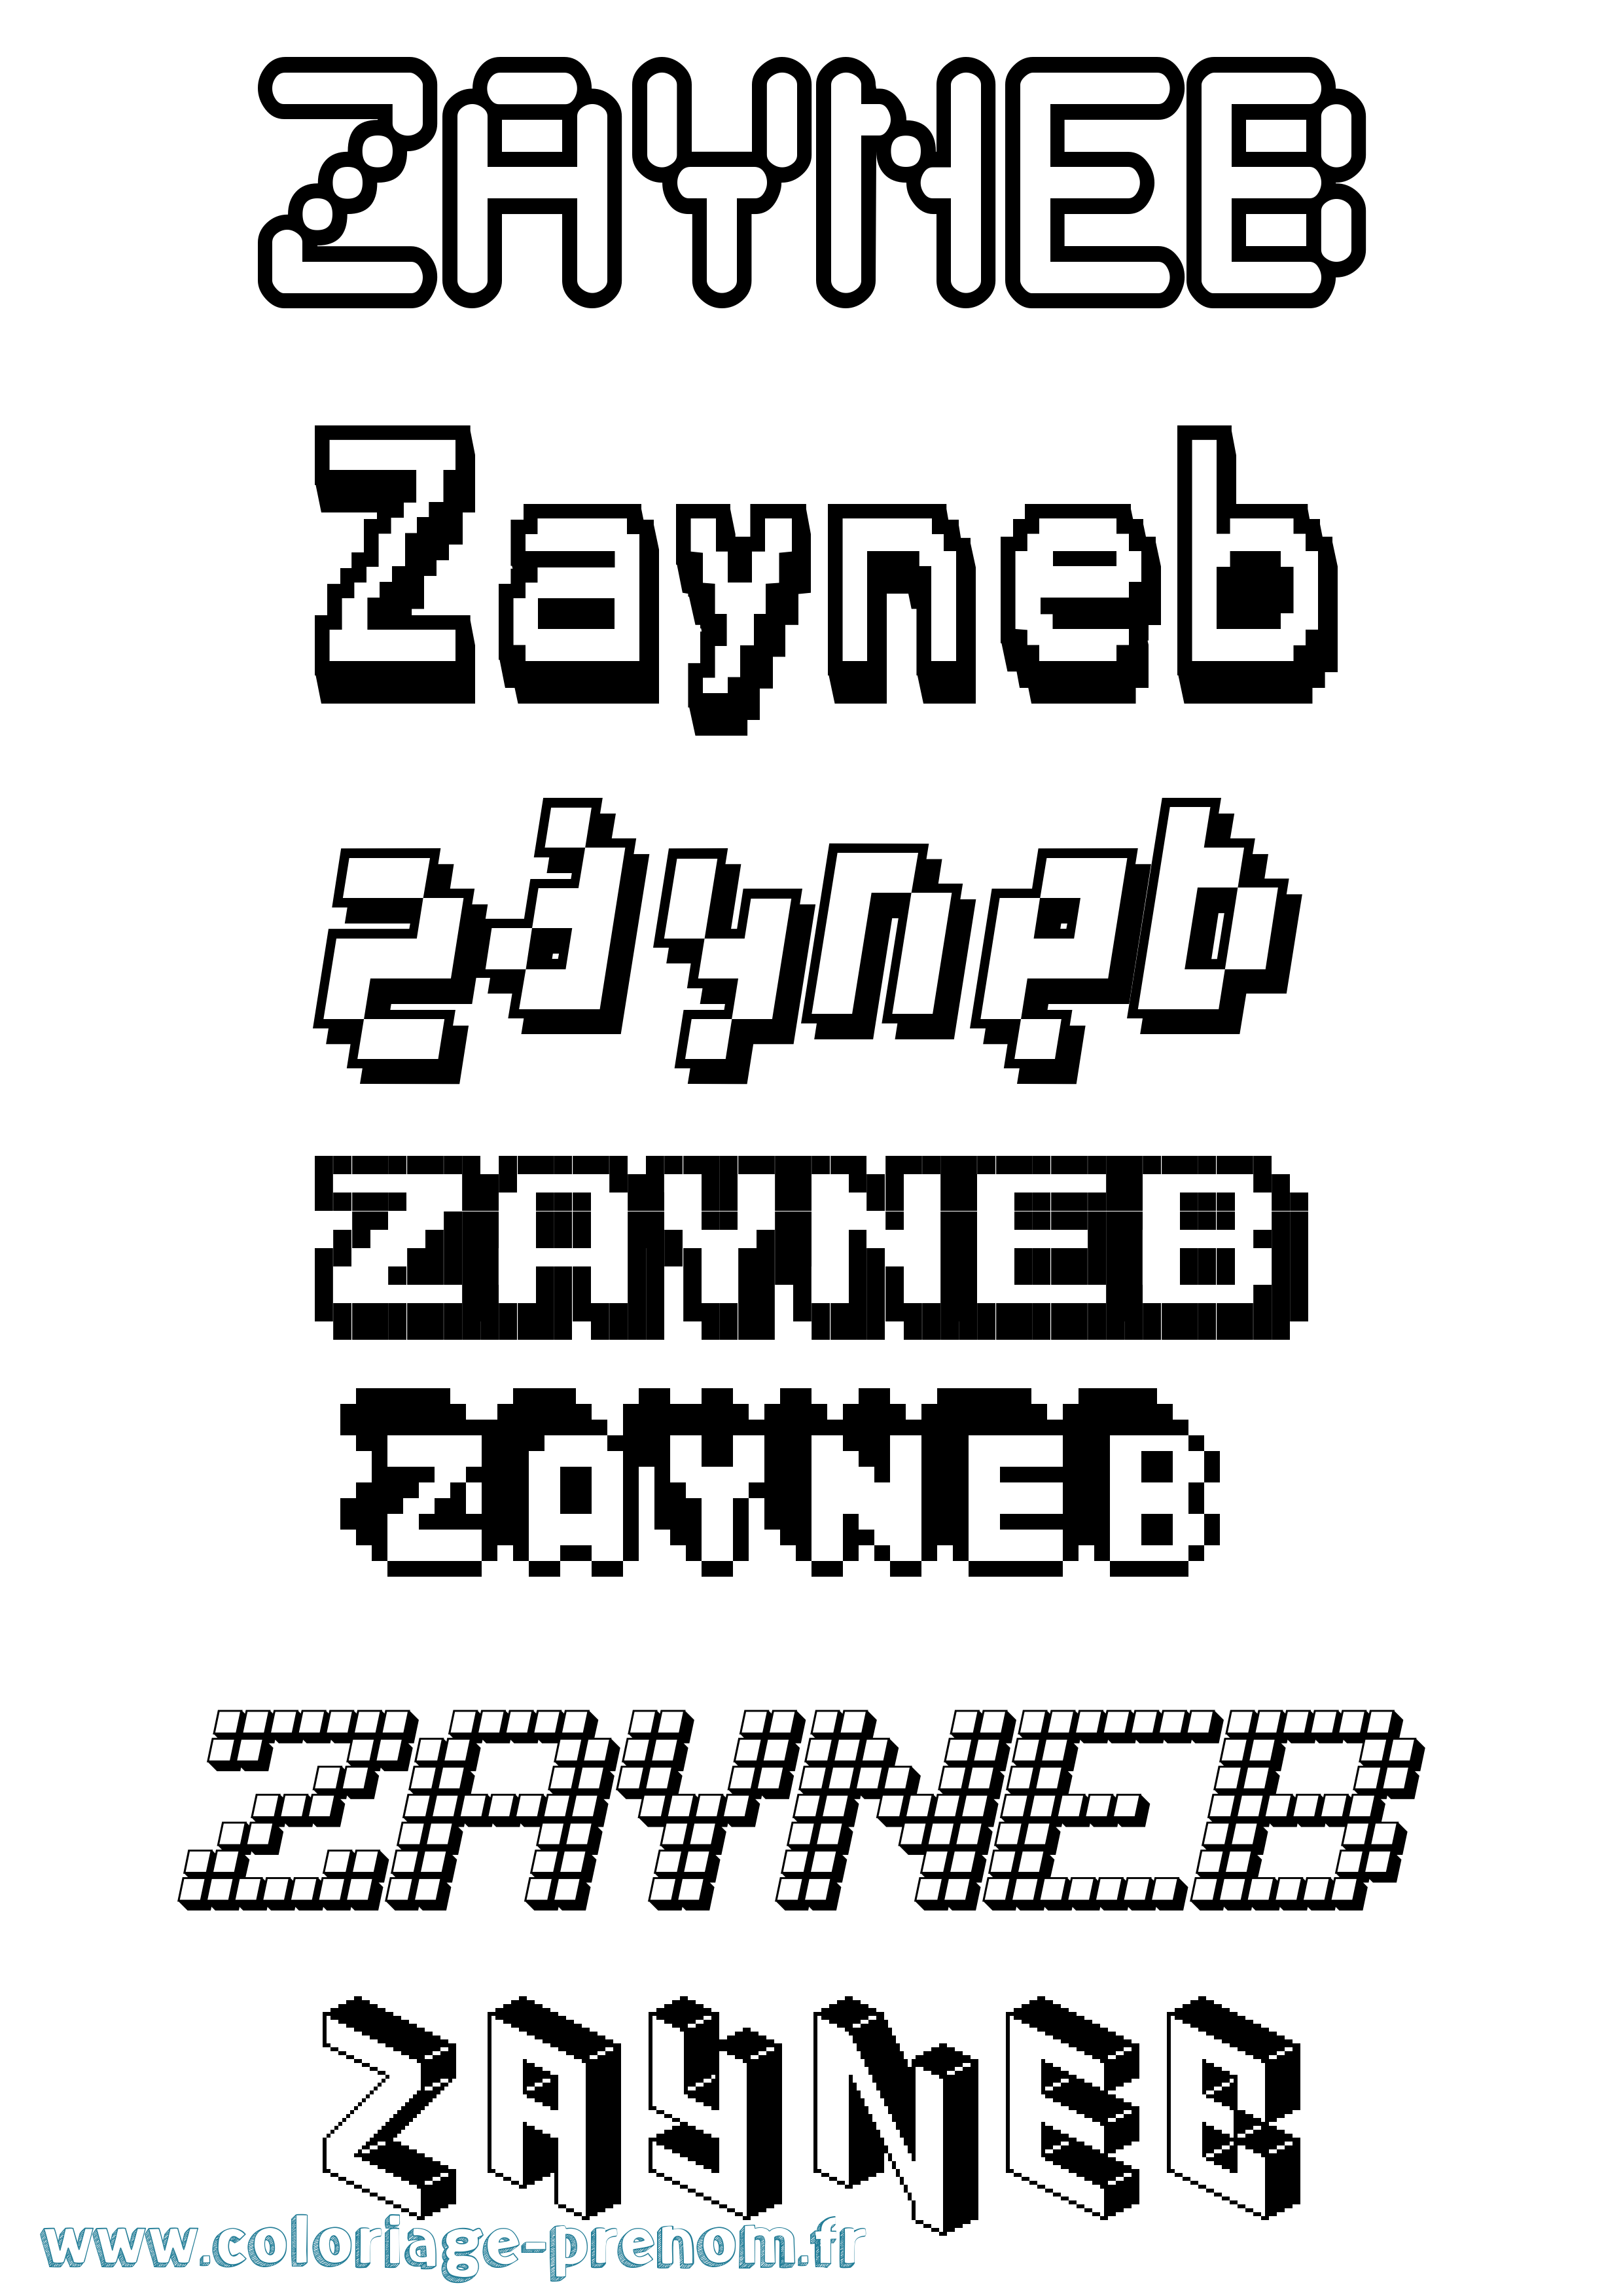 Coloriage prénom Zayneb Pixel